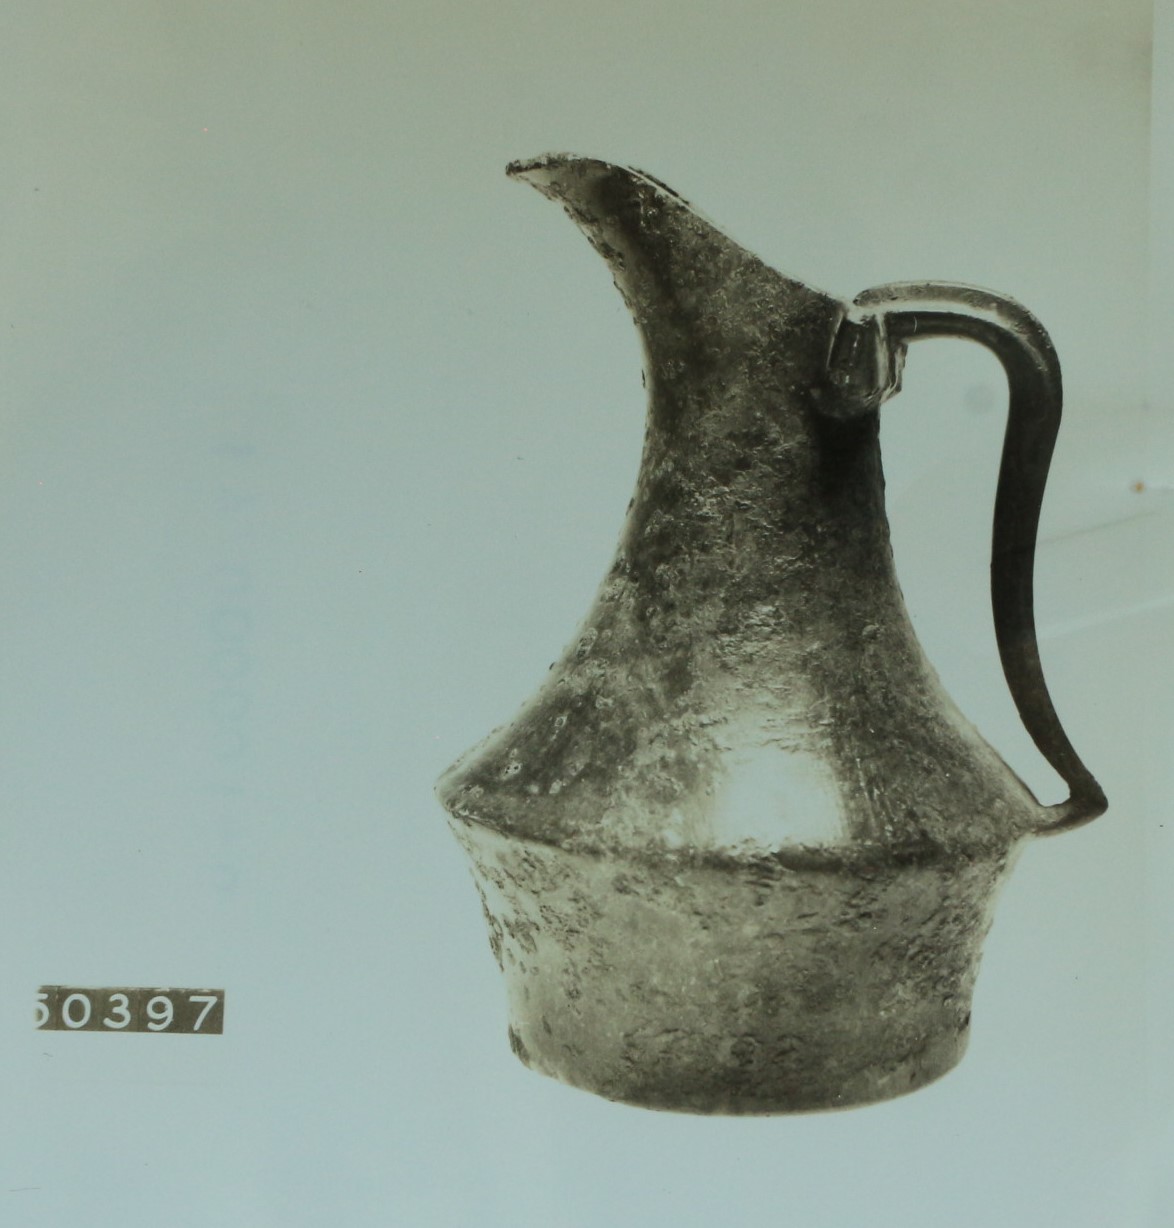 schnabelkanne, etrusco-italico (SECOLI/ VI a.C)